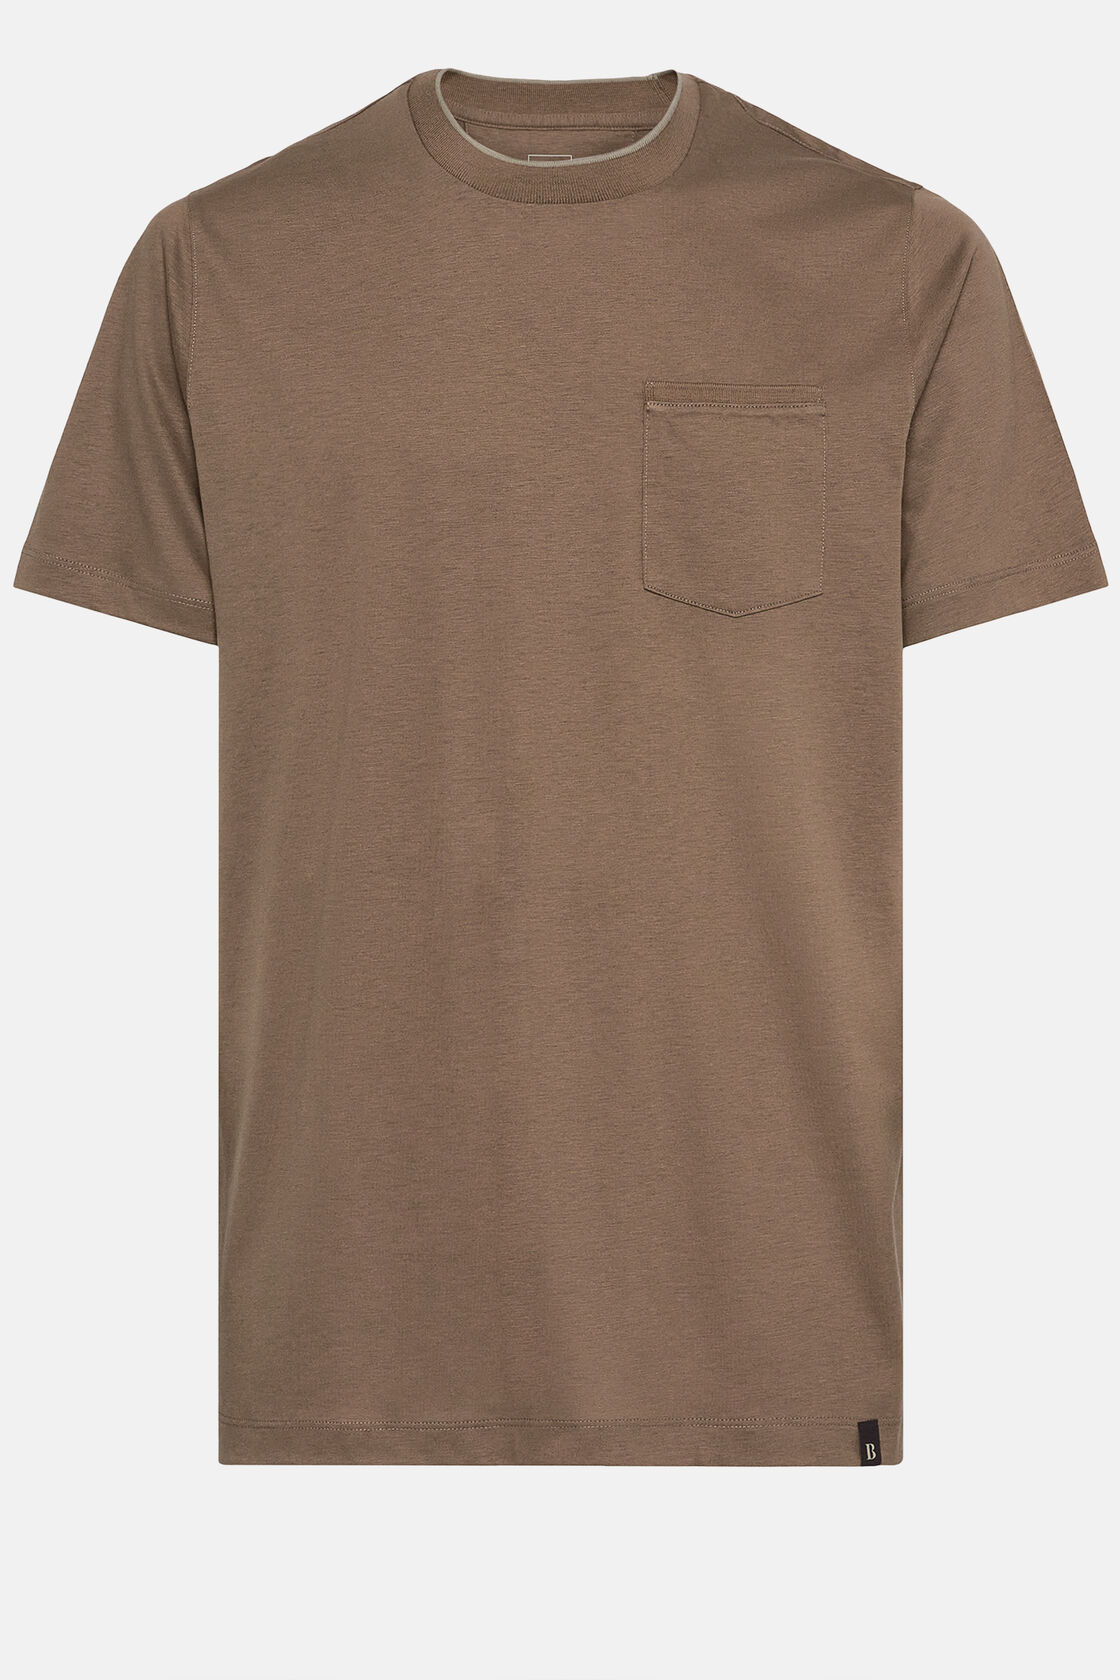 T-shirt in katoen en tencel jersey, Brown, hi-res